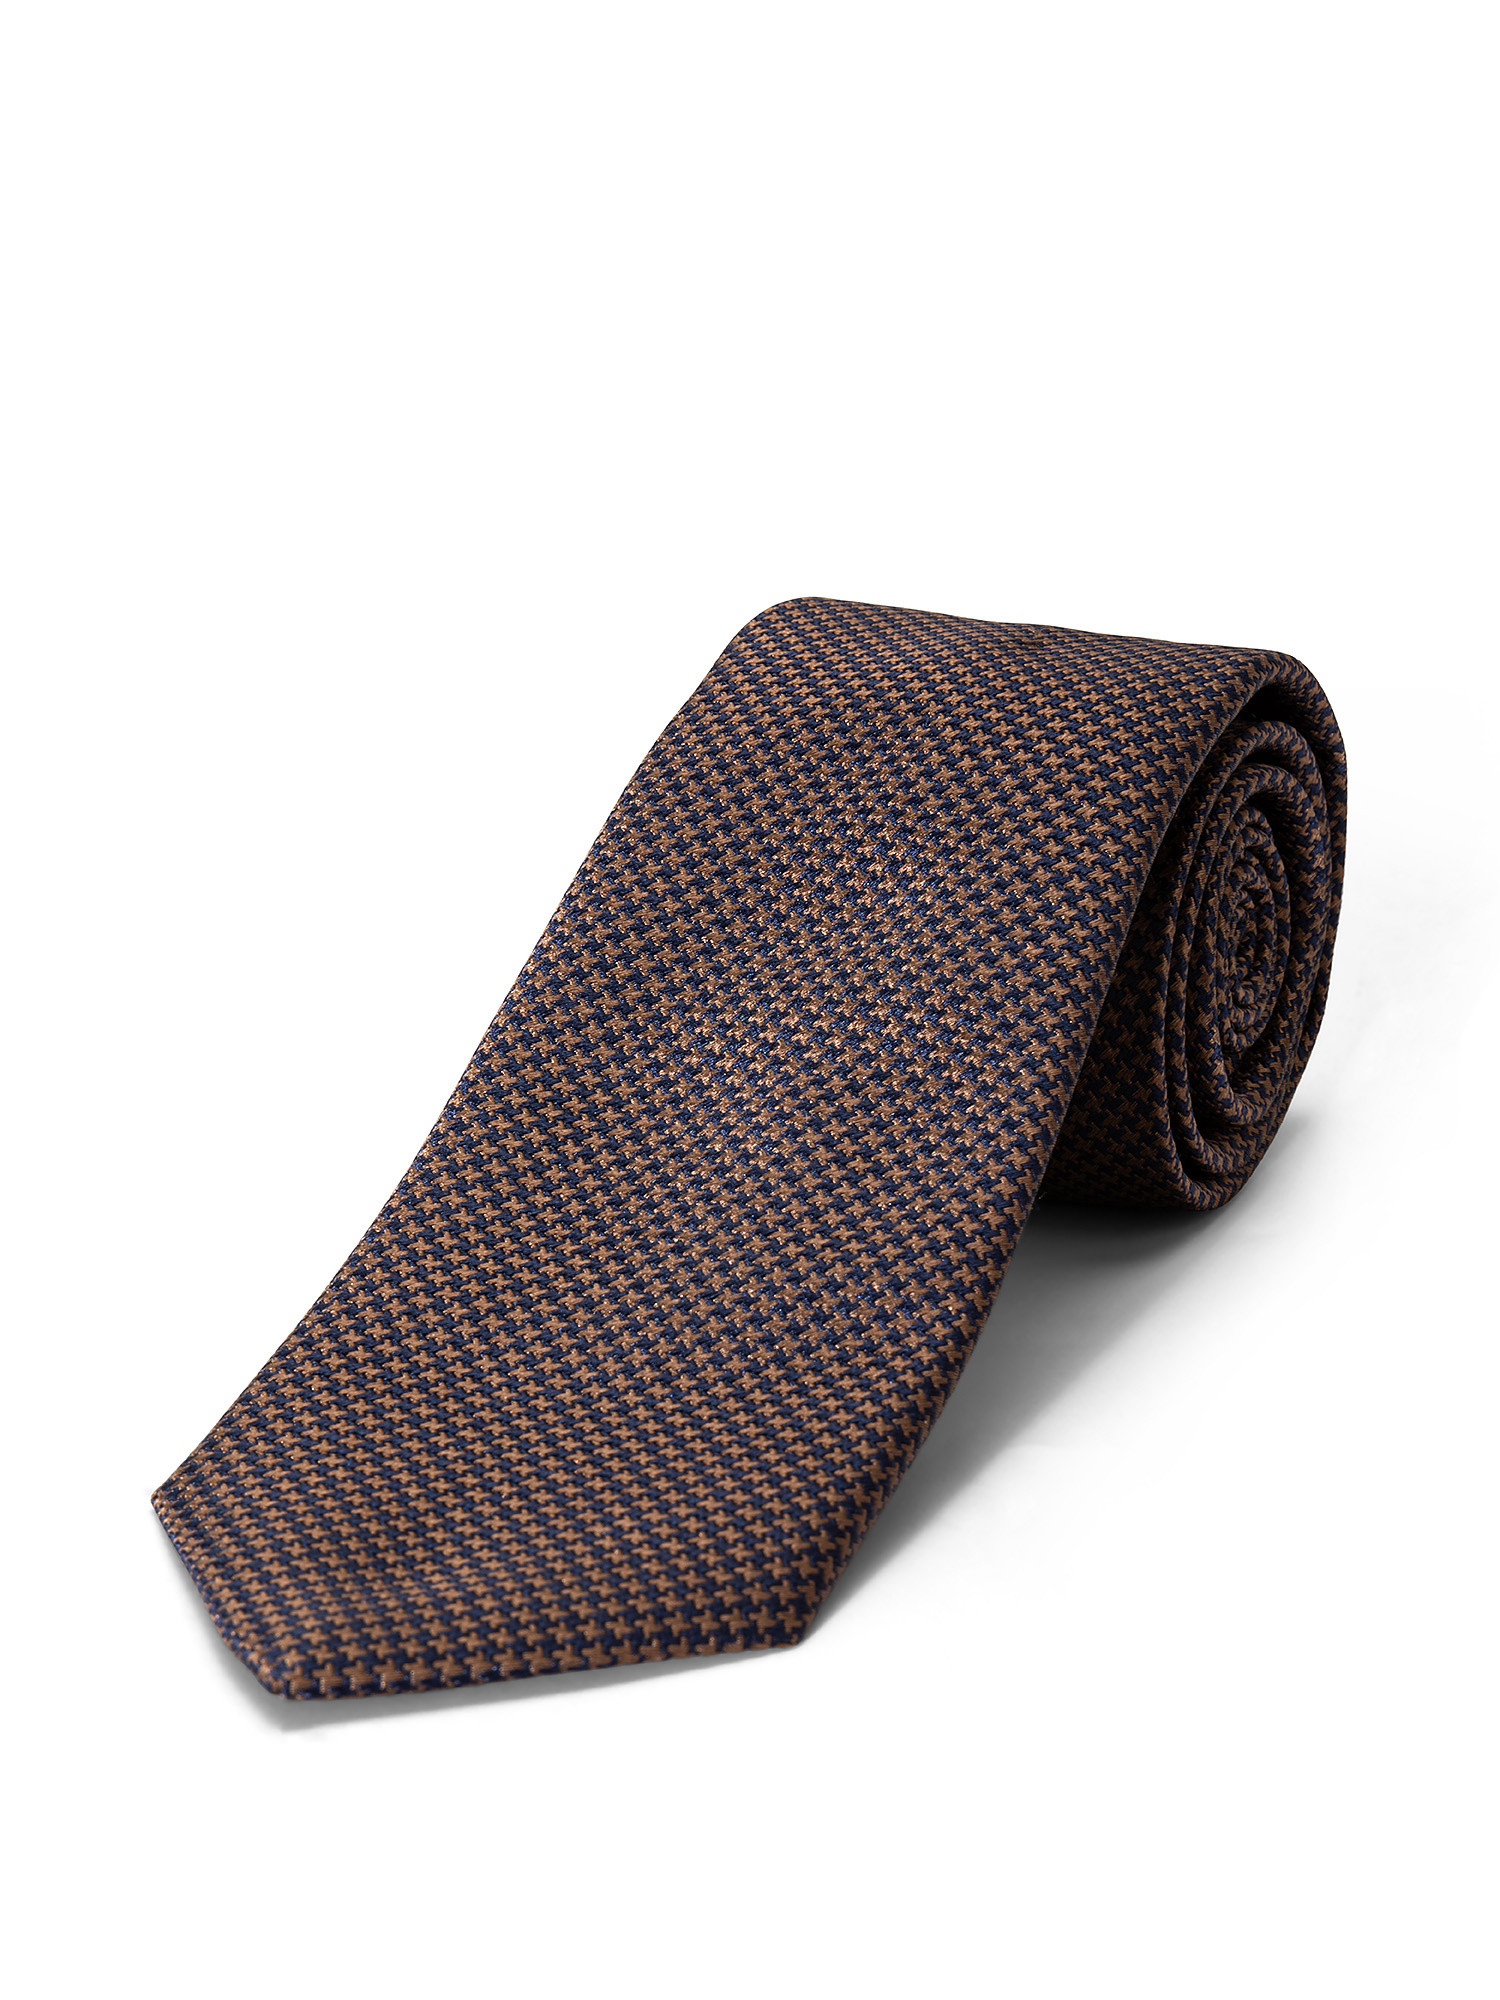 Cravatta in pura seta tinta unita, Marrone, large image number 1